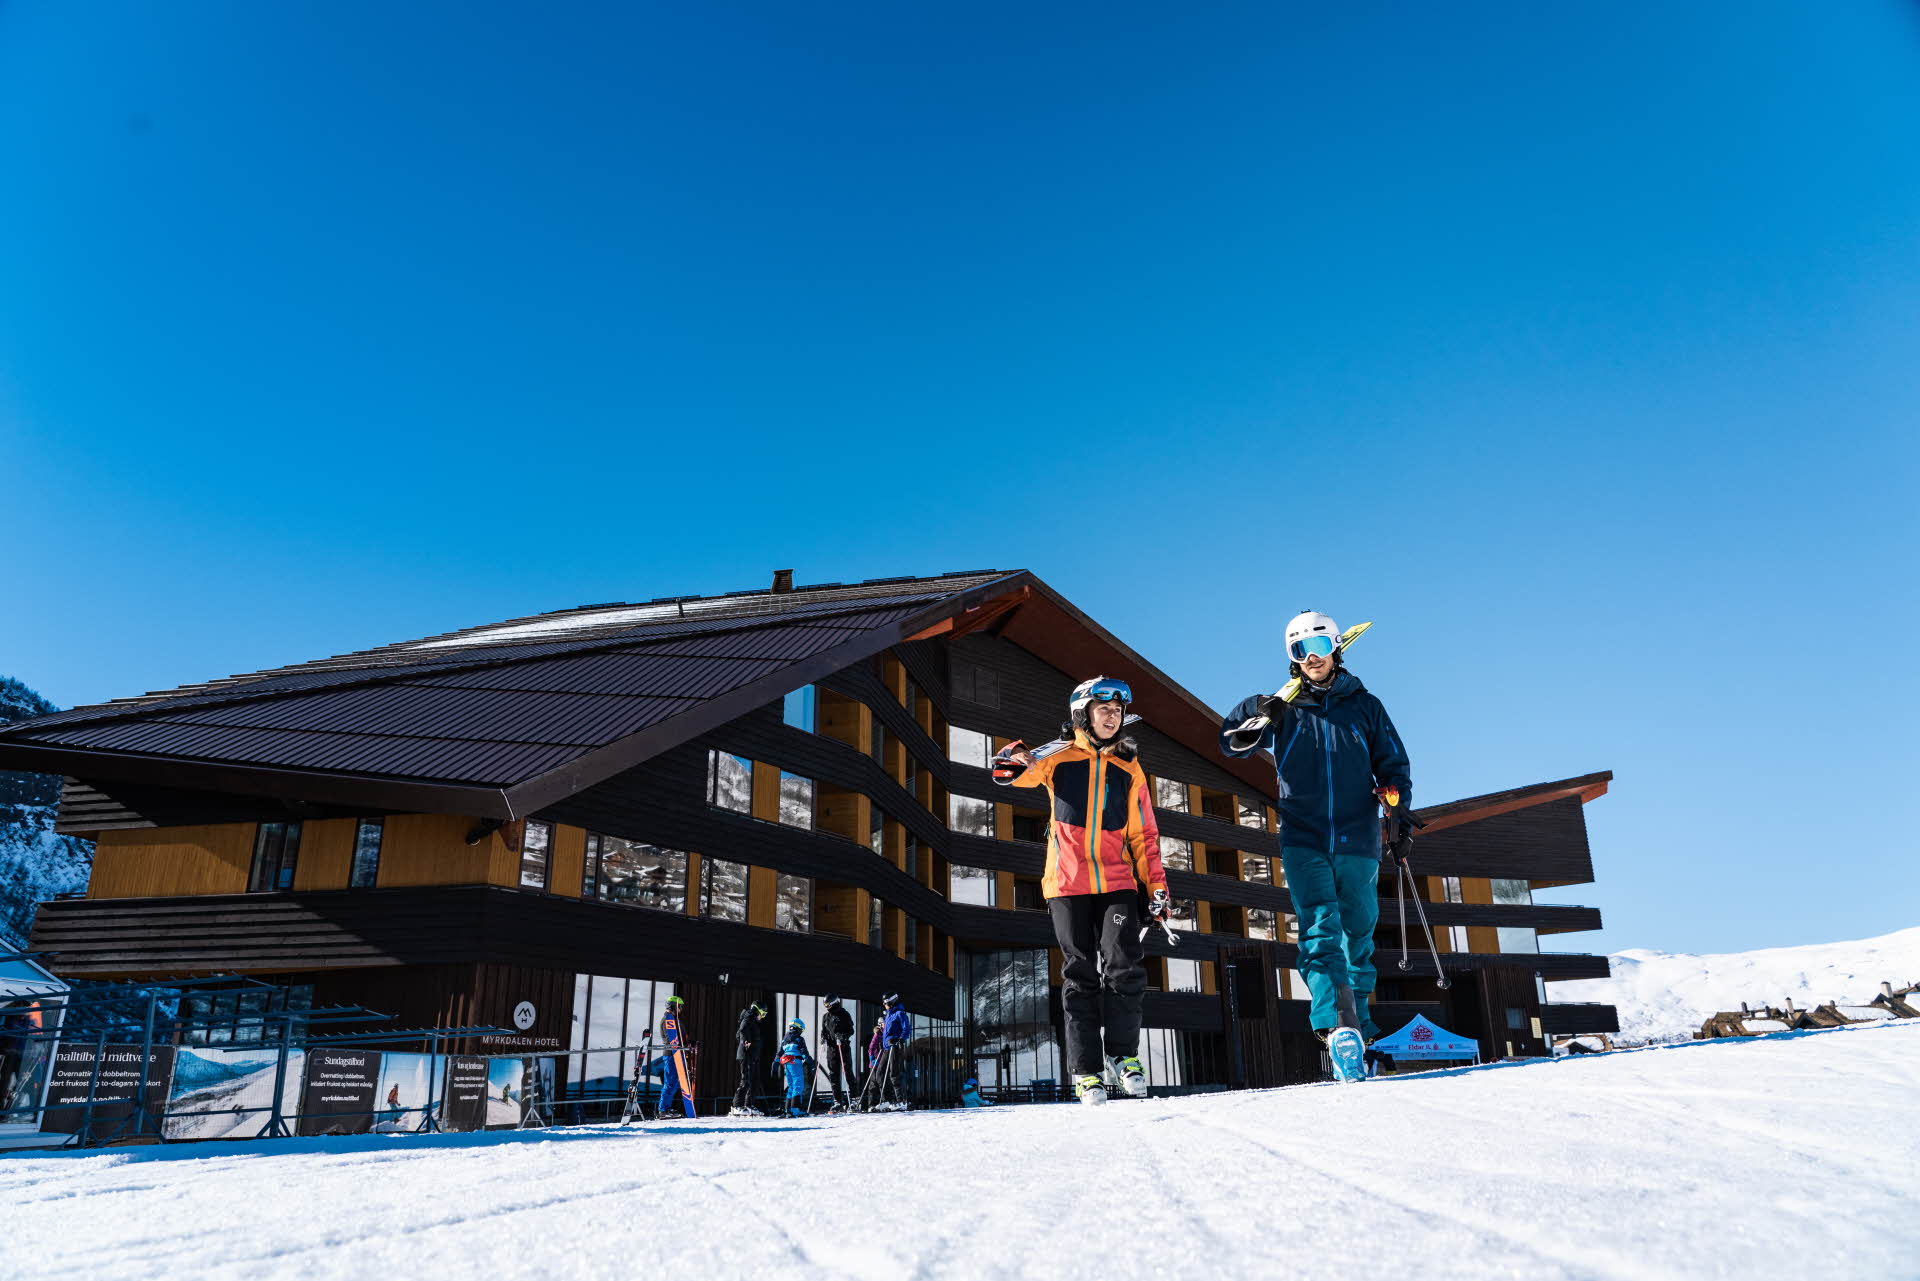 一男一女戴着滑雪头盔，拿着滑雪板，走在迈克达林酒店 (Myrkdalen Hotel) 旁边的雪地上